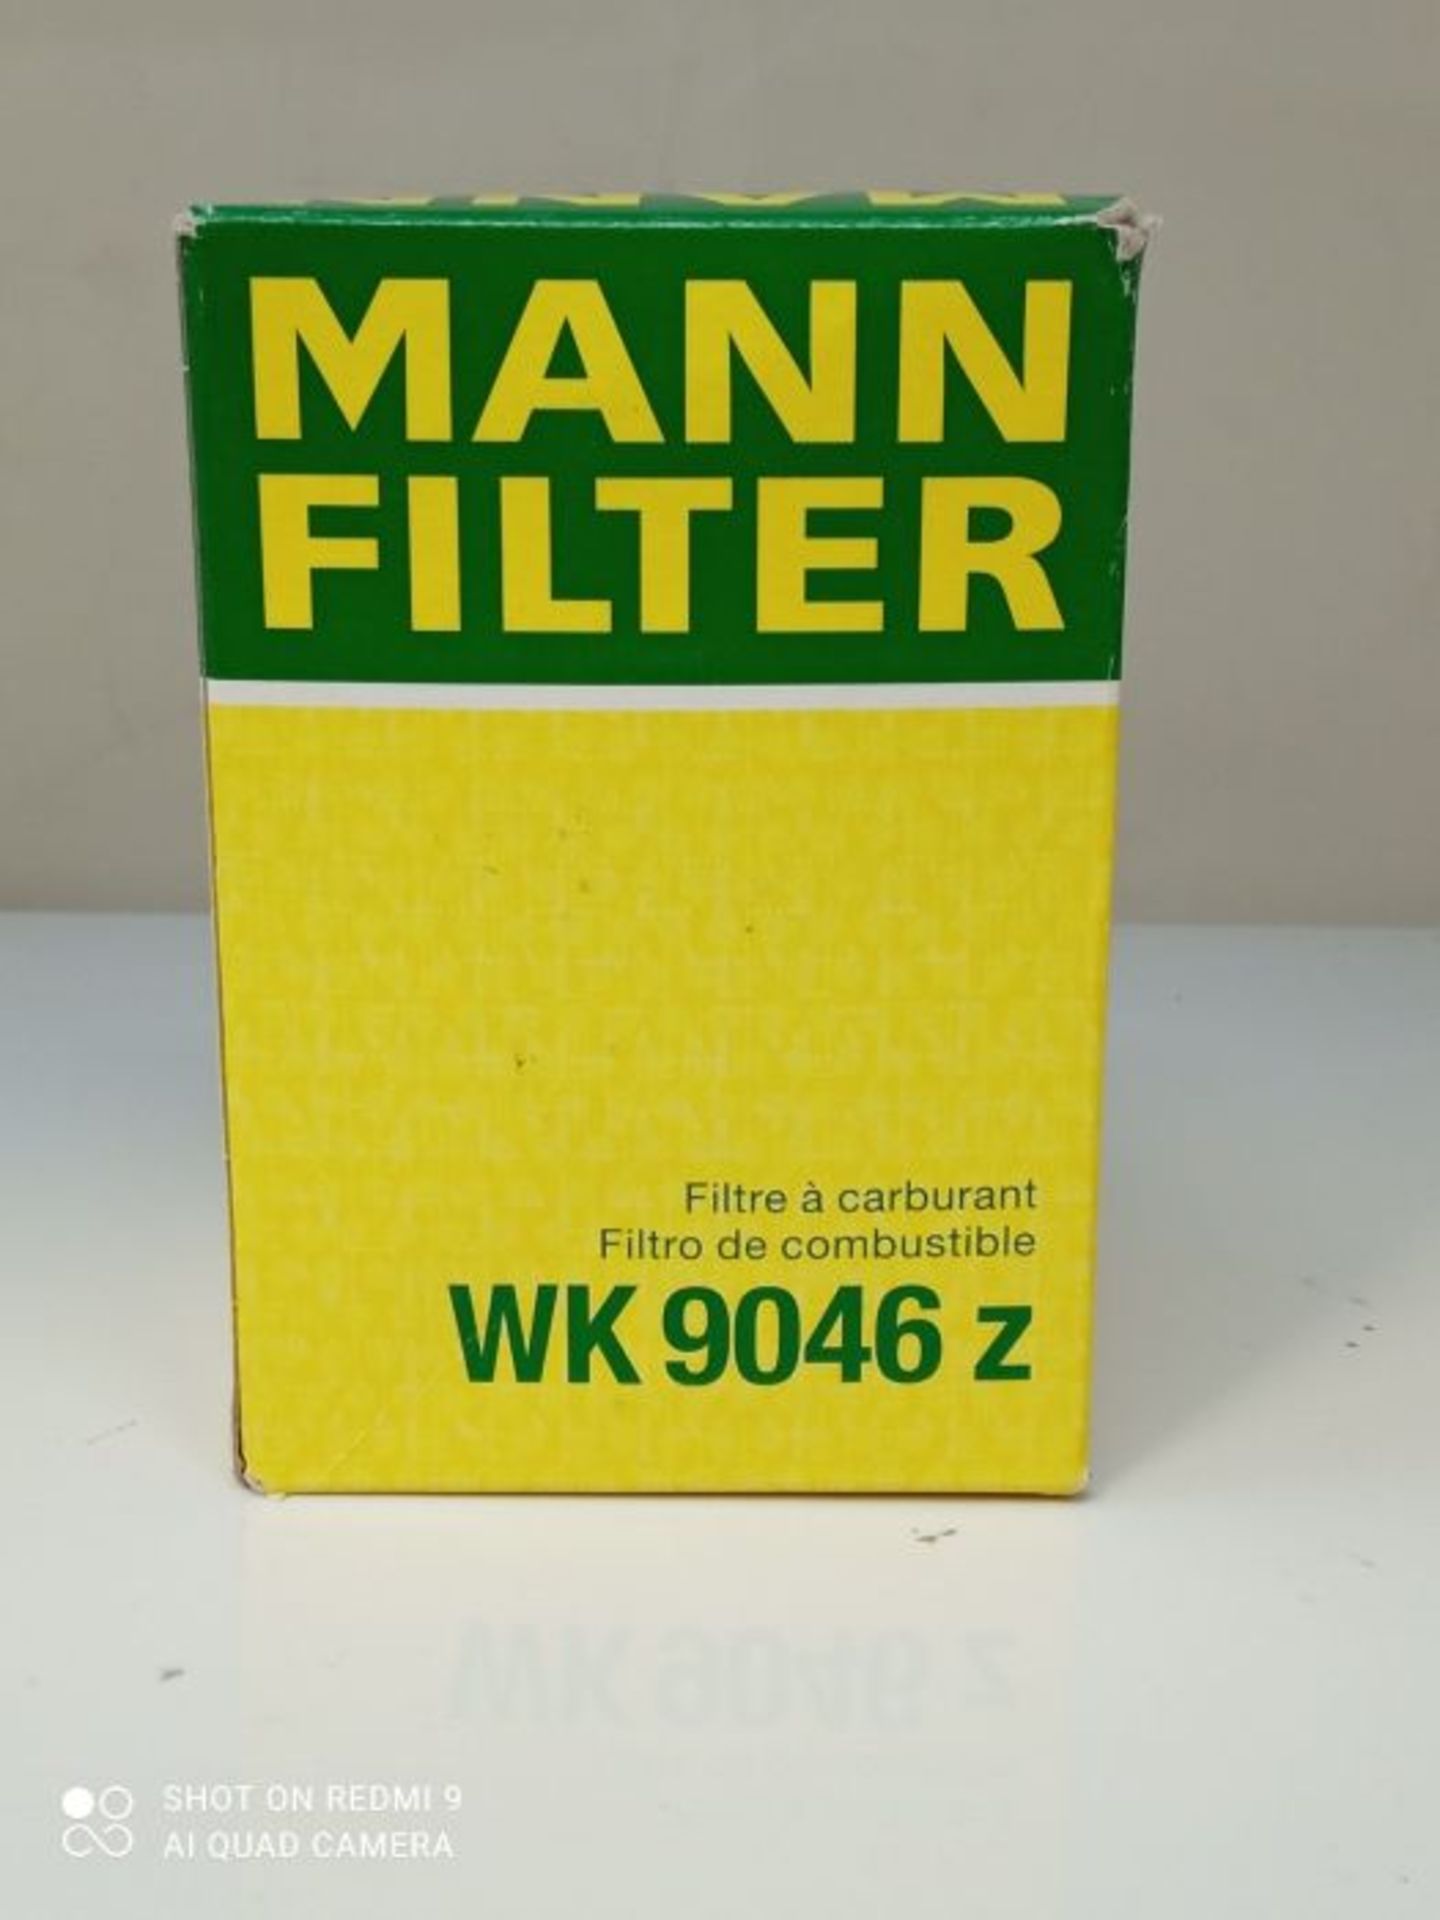 Original MANN-FILTER Fuel filter WK 9046 Z  Fuel filter set with gasket / gasket se - Image 2 of 3